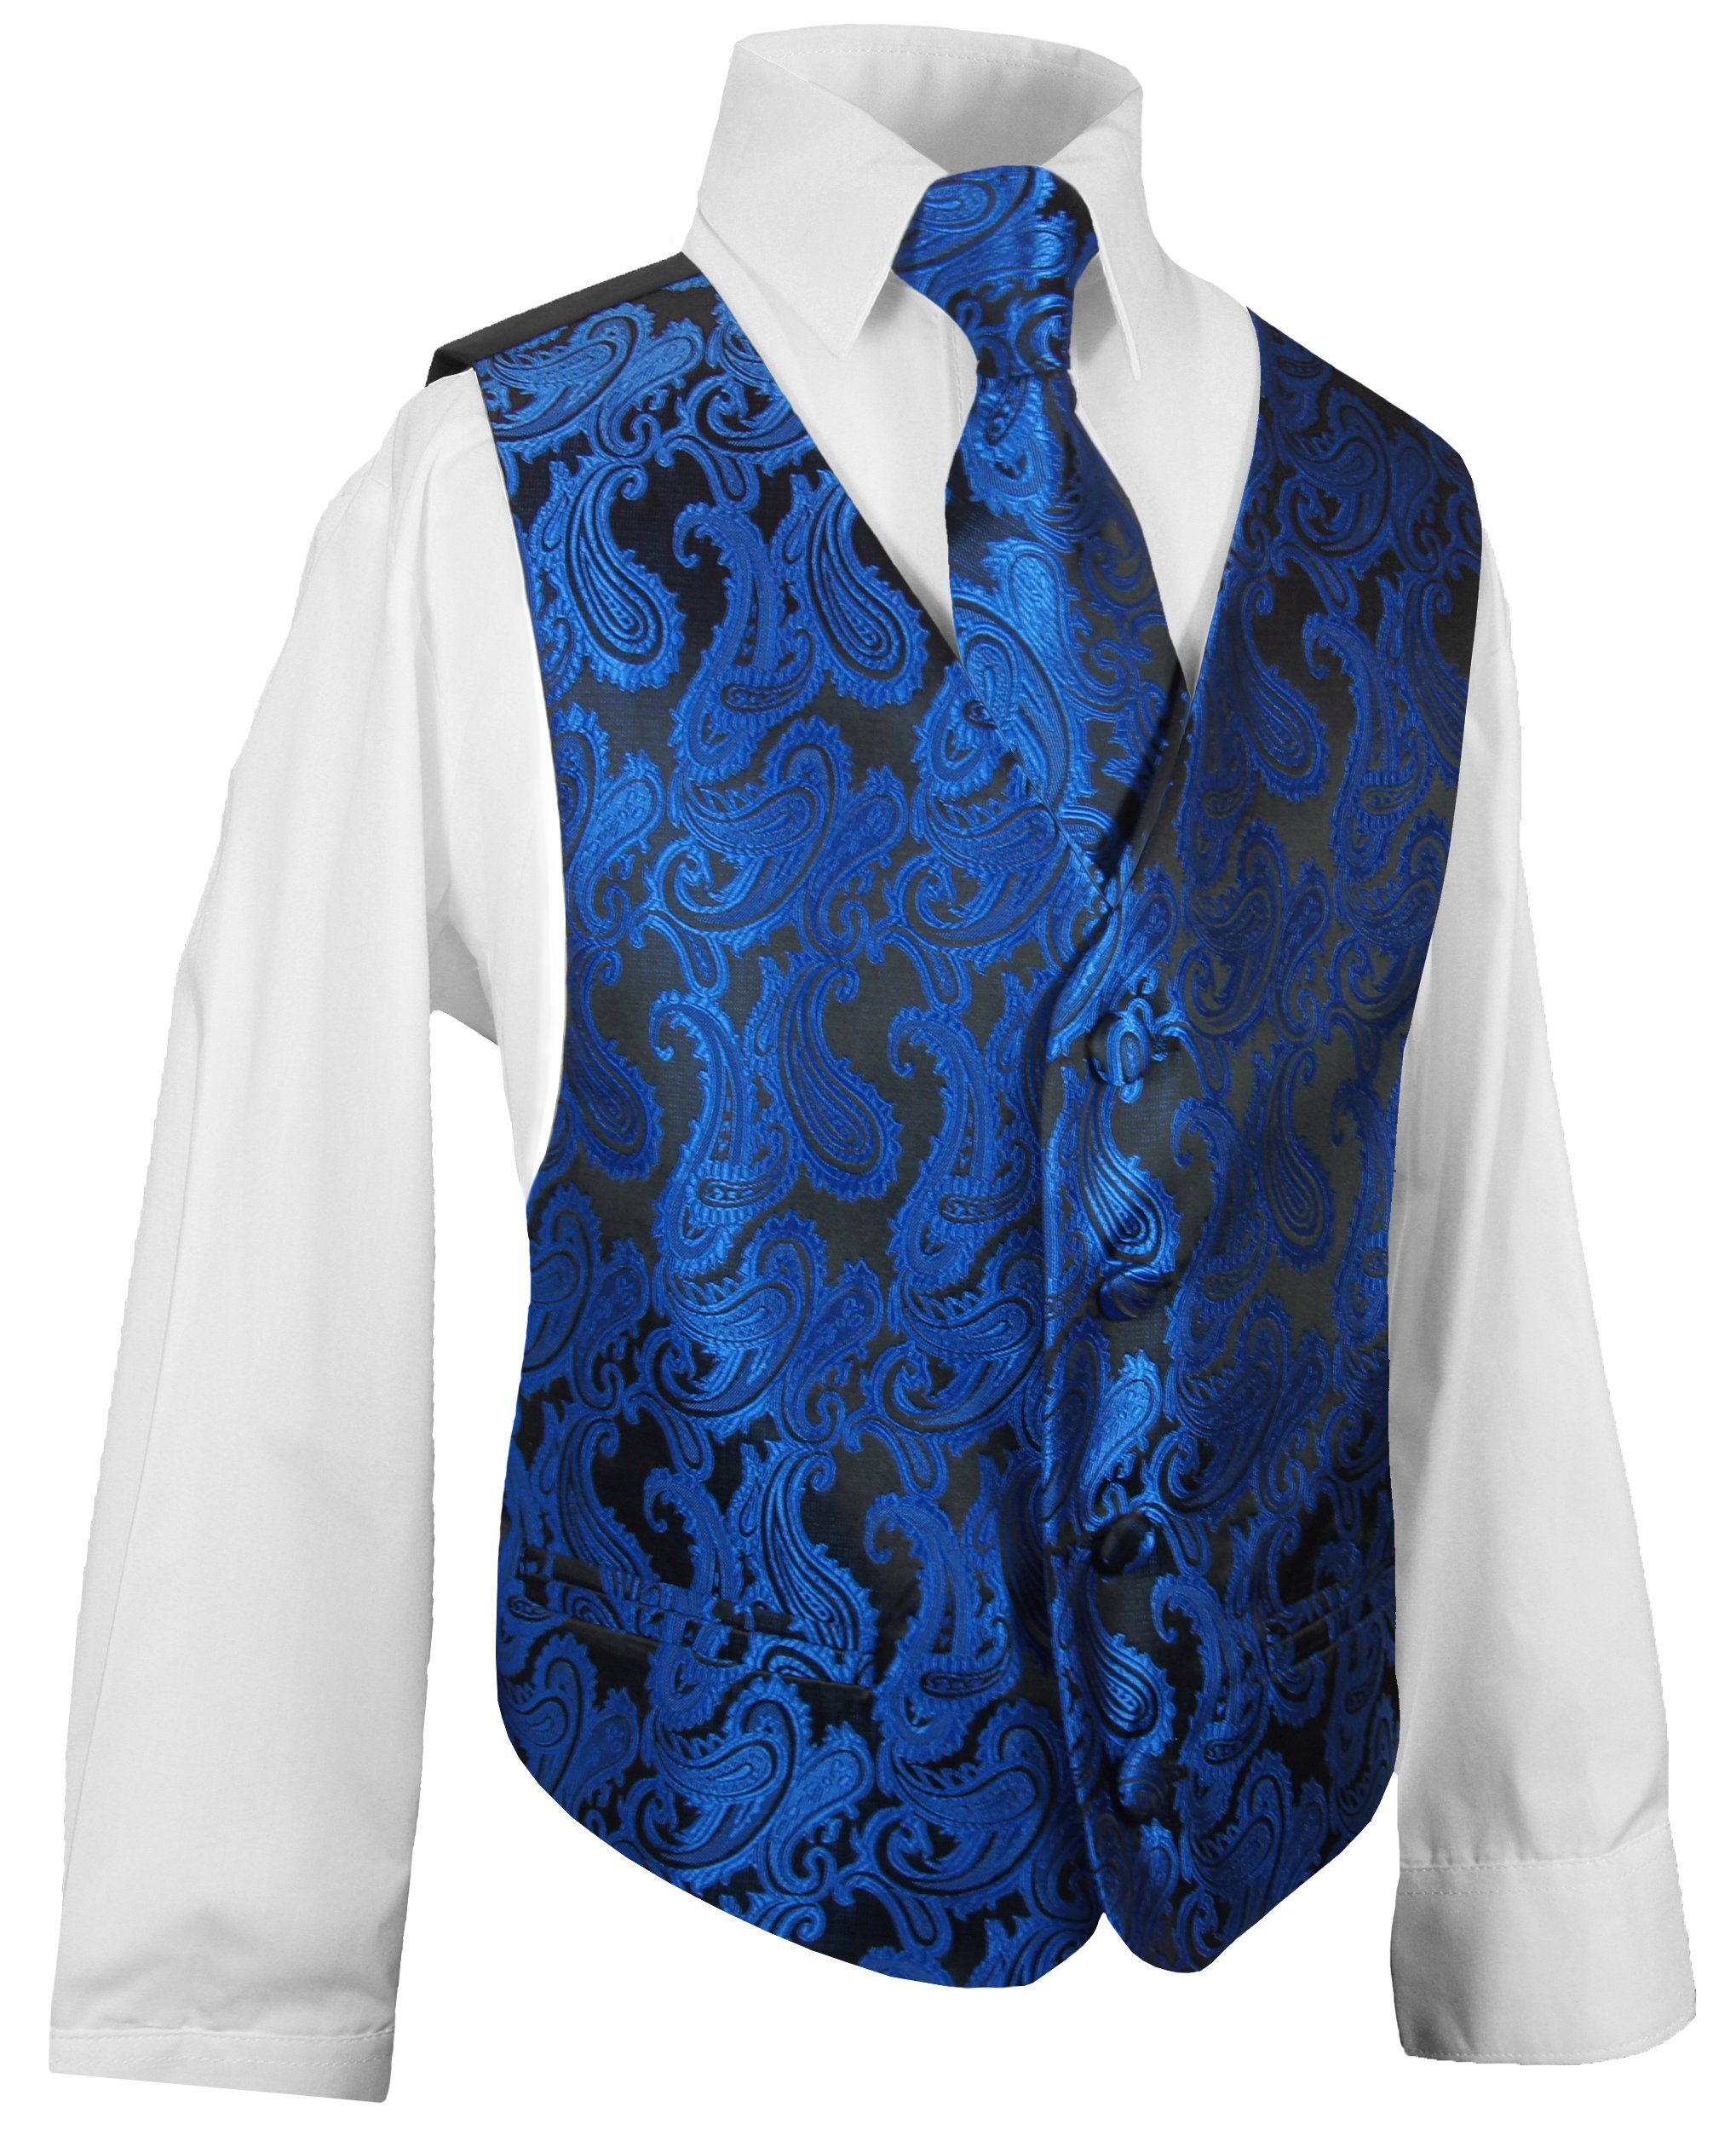 Paul Malone Anzugweste Festliche Kinderweste Jungenweste Kinder Anzug Weste (Set, 3-tlg., mit Weste, Hemd und Krawatte) blau KV98-Krawatte